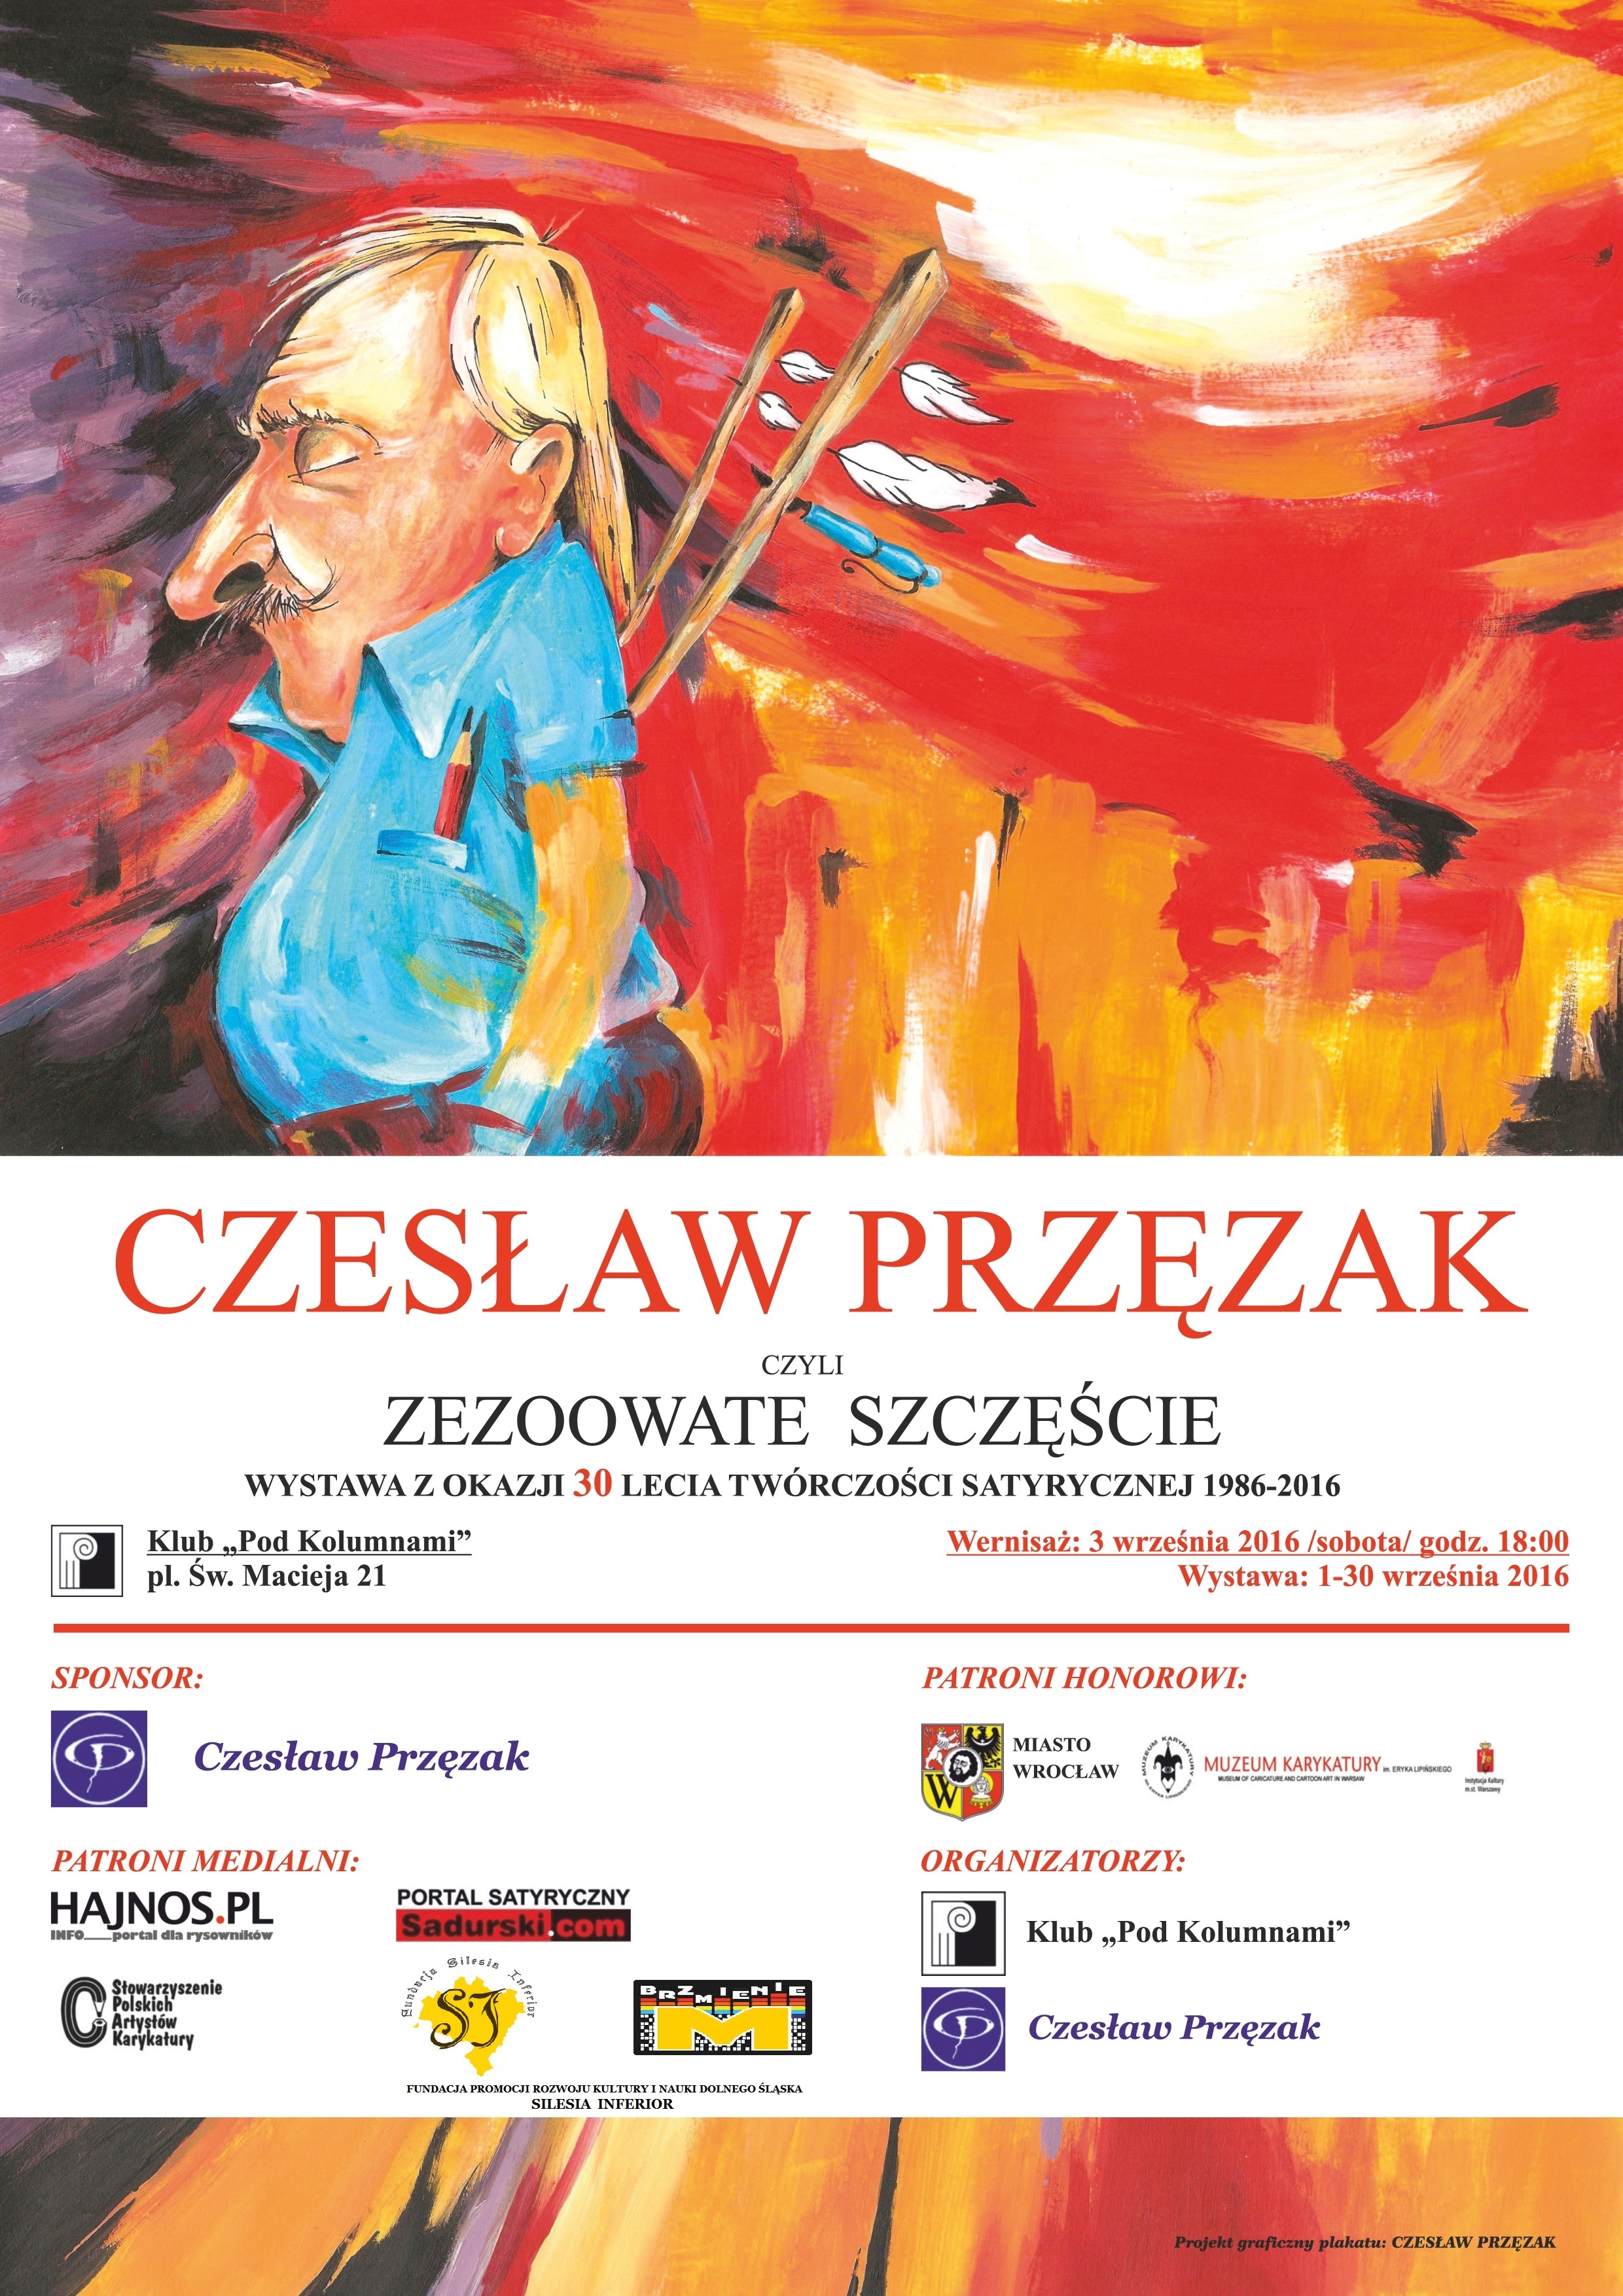 Czesław Przęzak